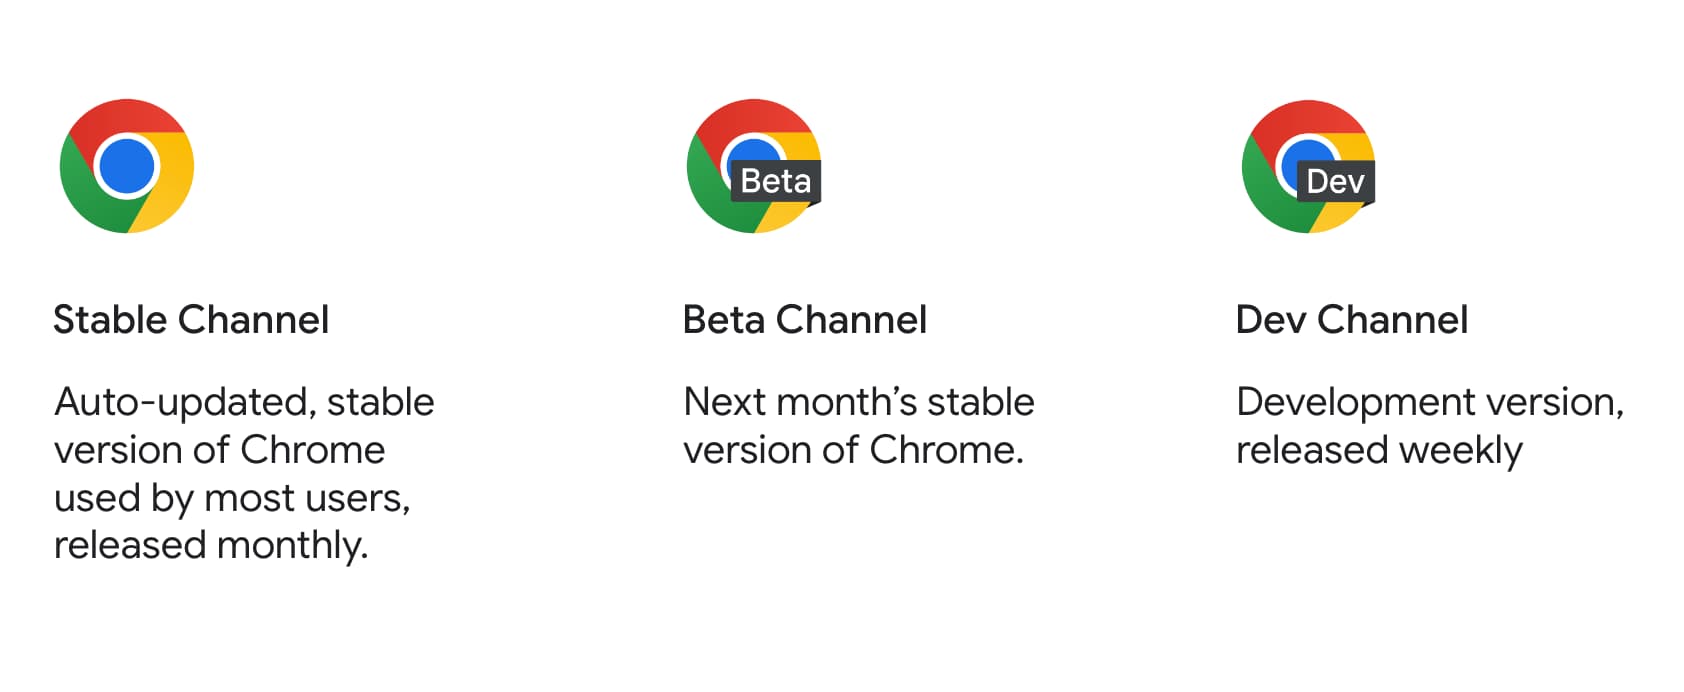 Значки продуктов Chrome для стабильной, бета-версии и версии для разработчиков вместе с их описанием.